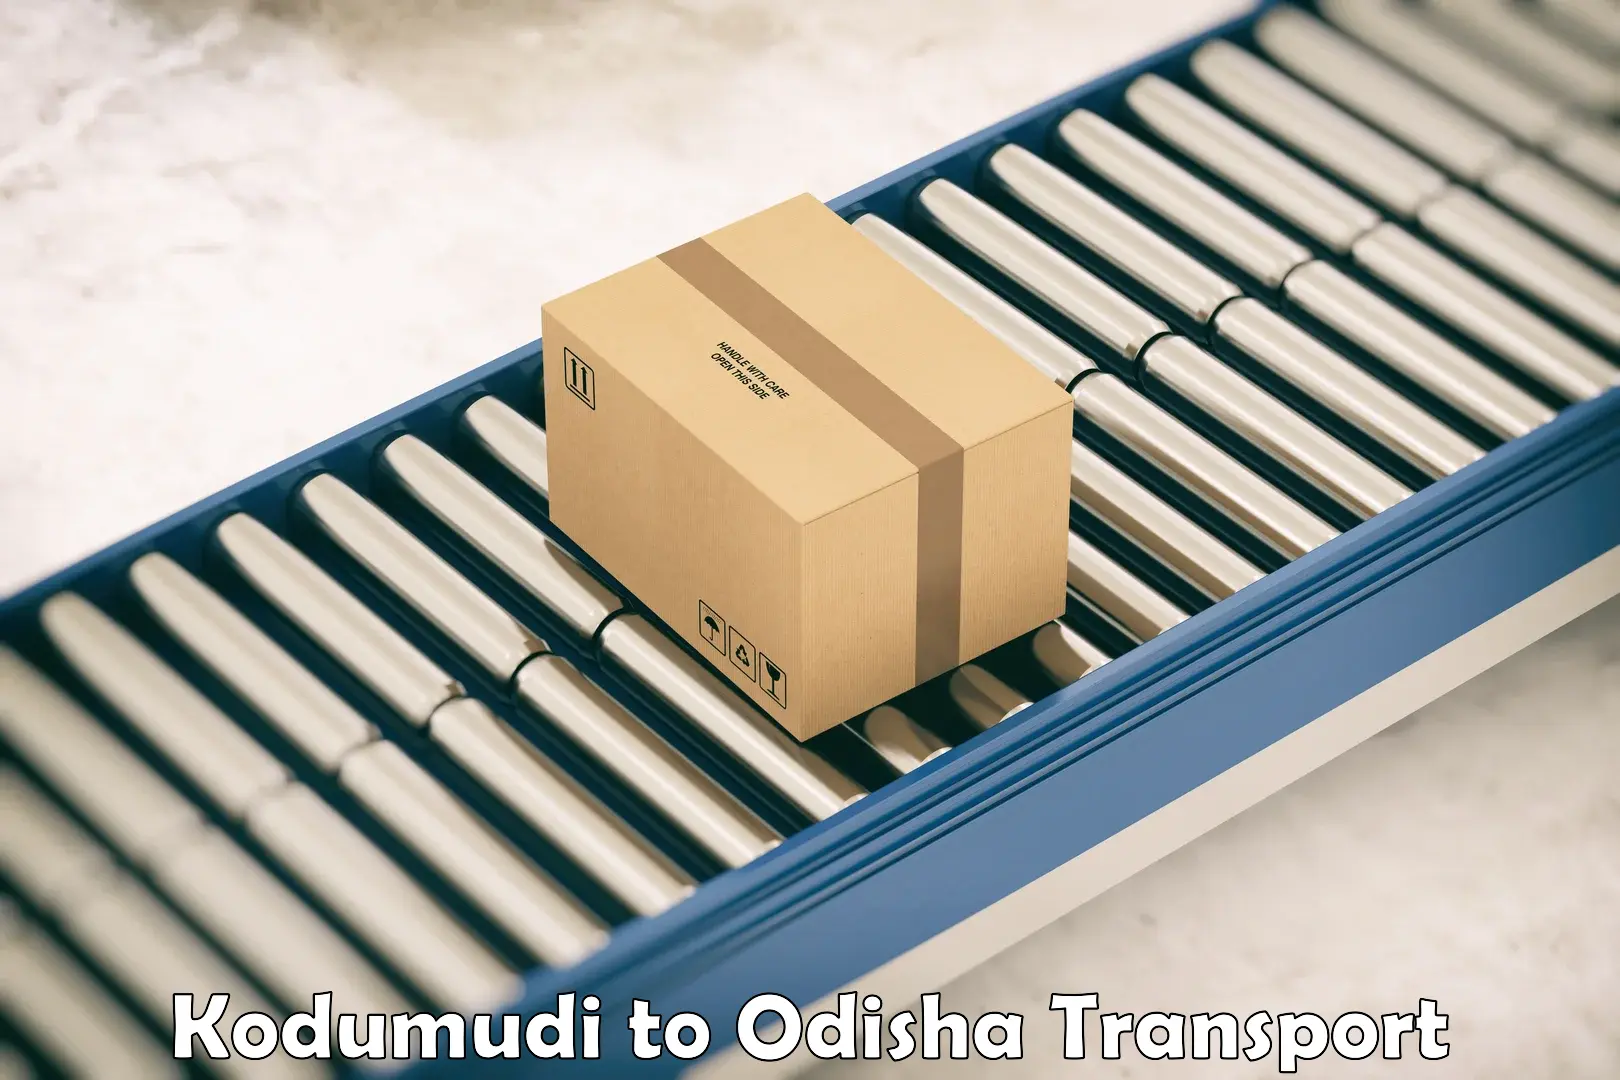 Pick up transport service Kodumudi to Paralakhemundi